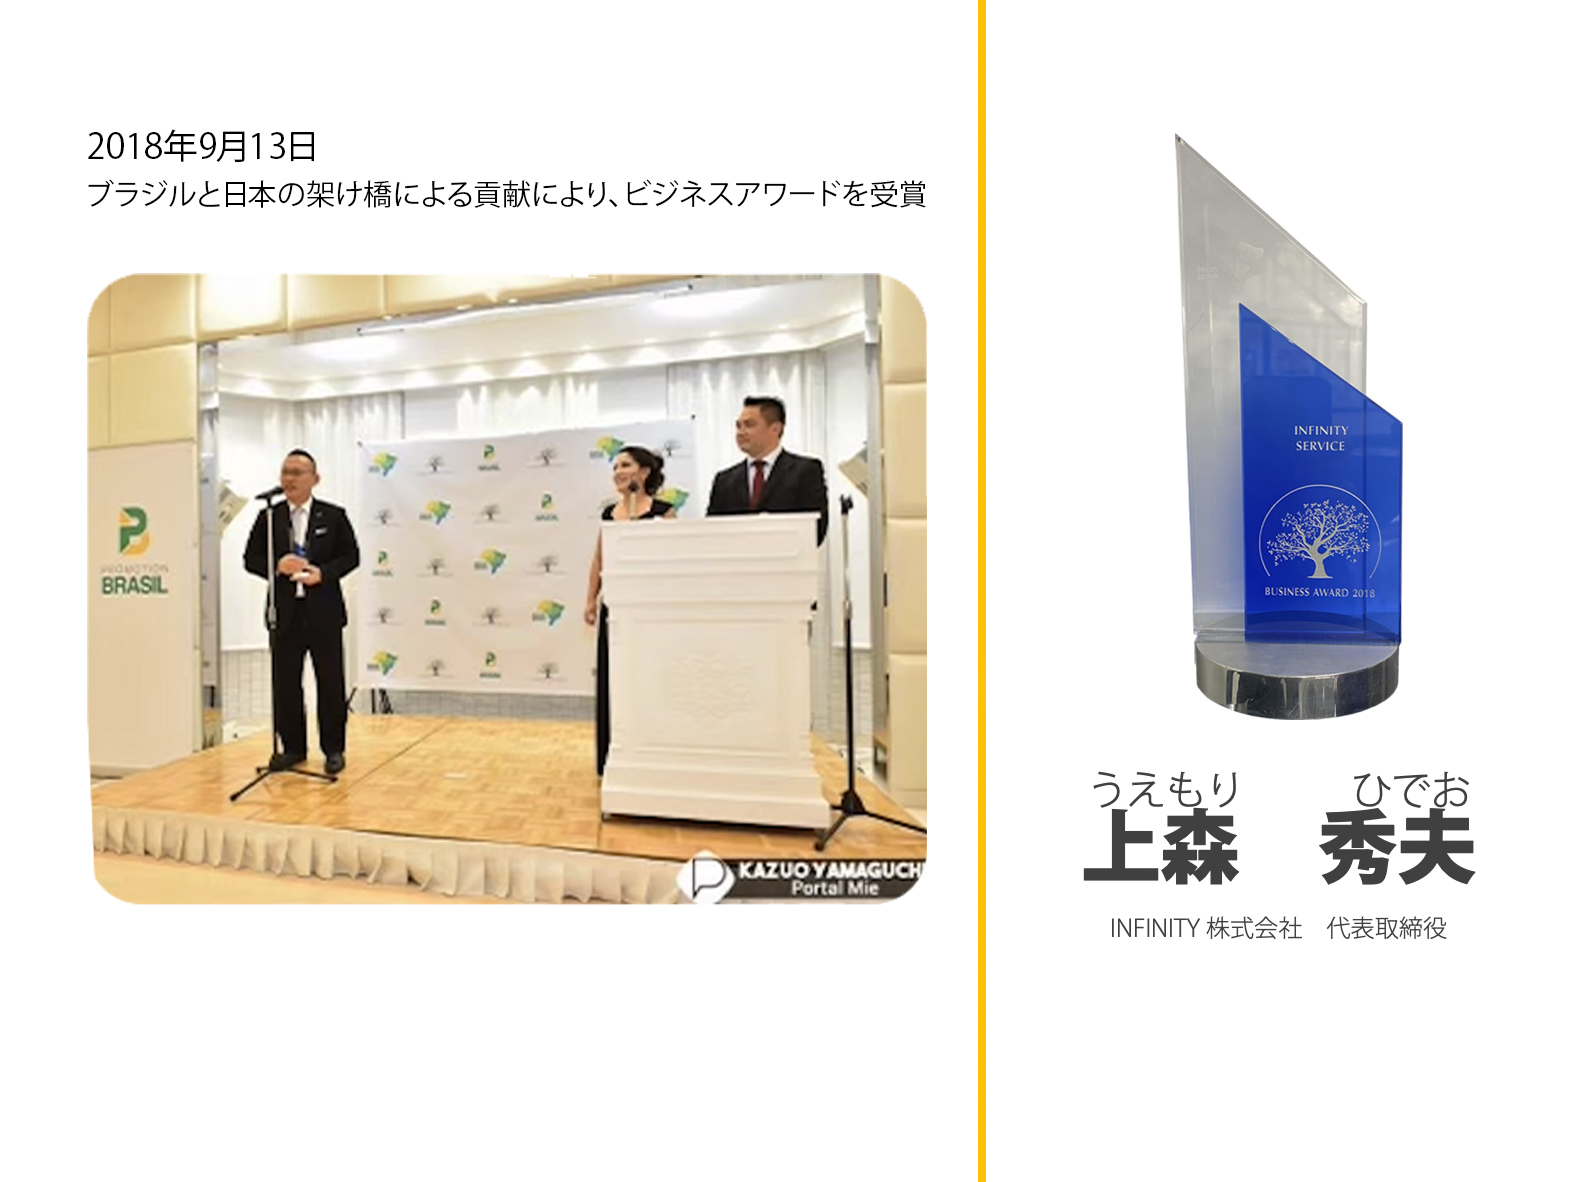 2018年9月13日  ブラジルと日本の架け橋による貢献により、 ビジネスアワードを受賞